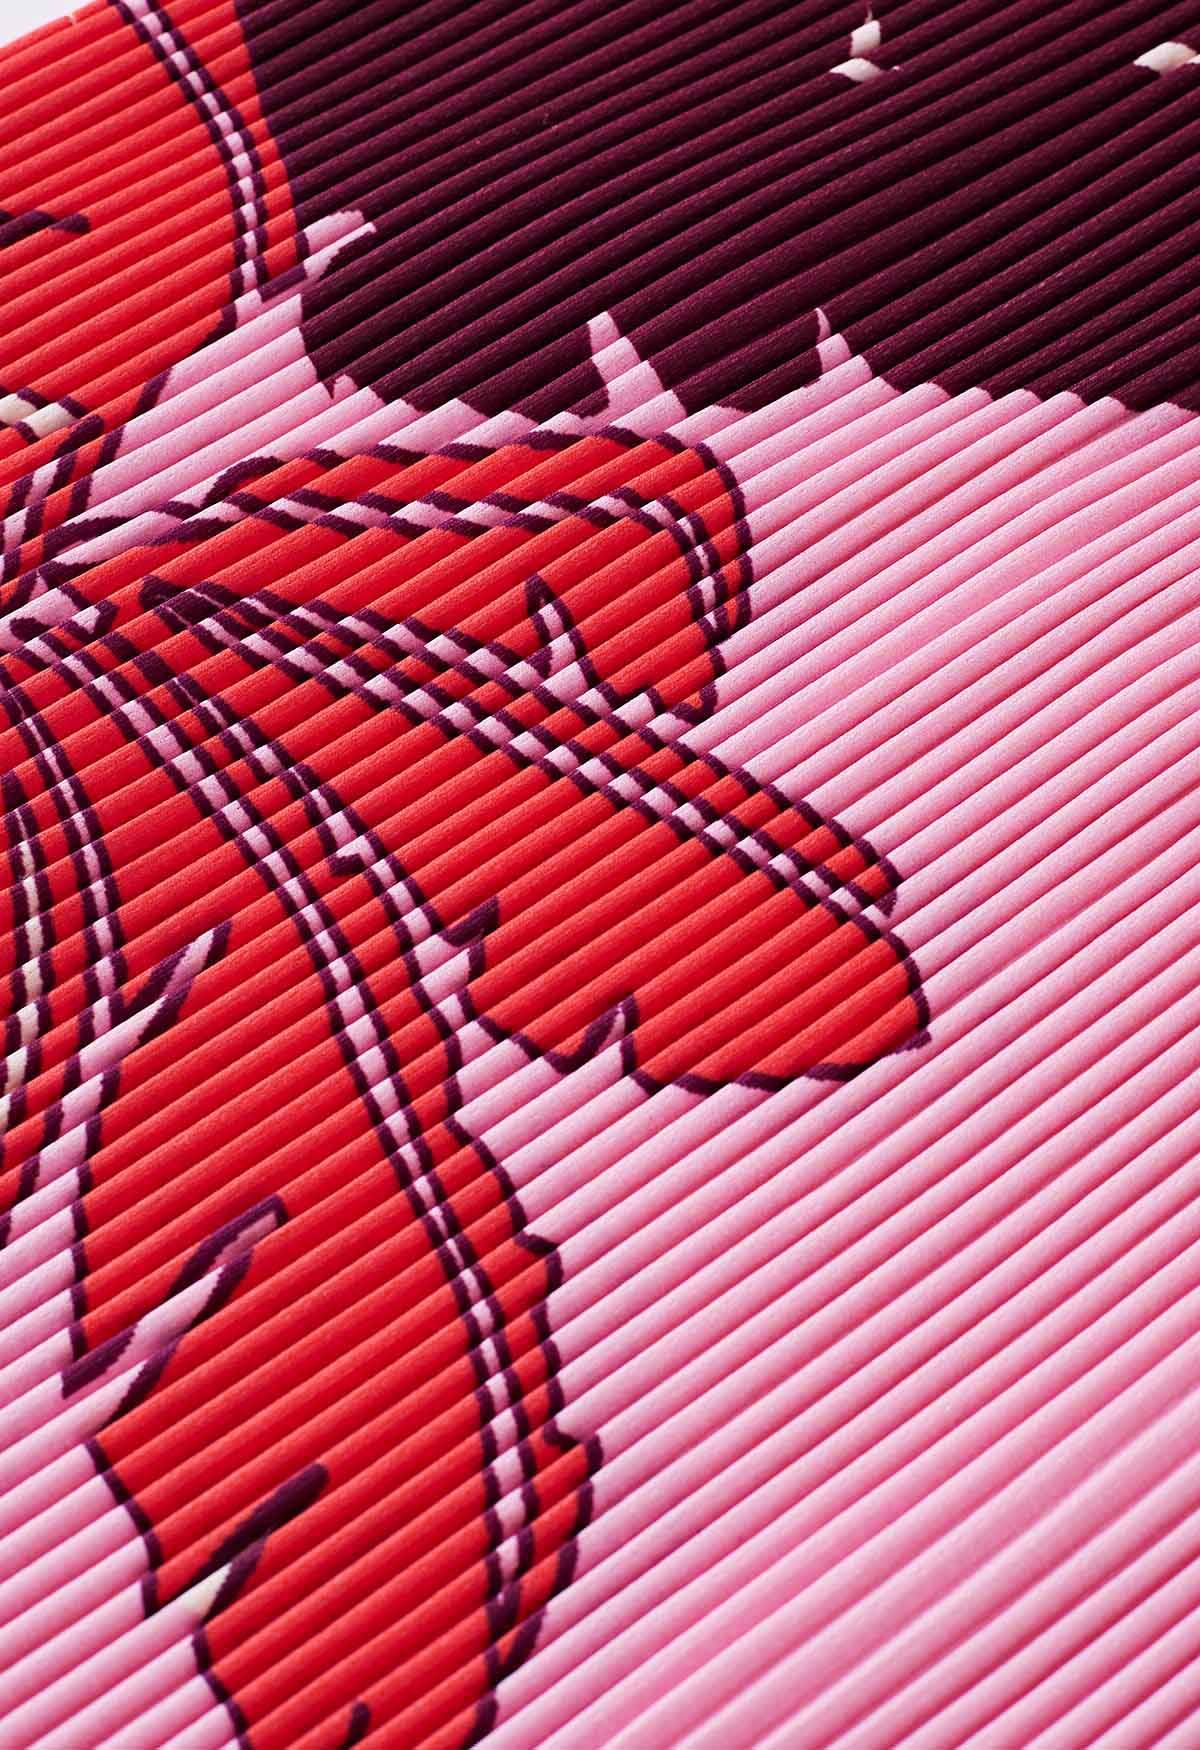 Falda lápiz plisada con estampado de palmeras tropicales